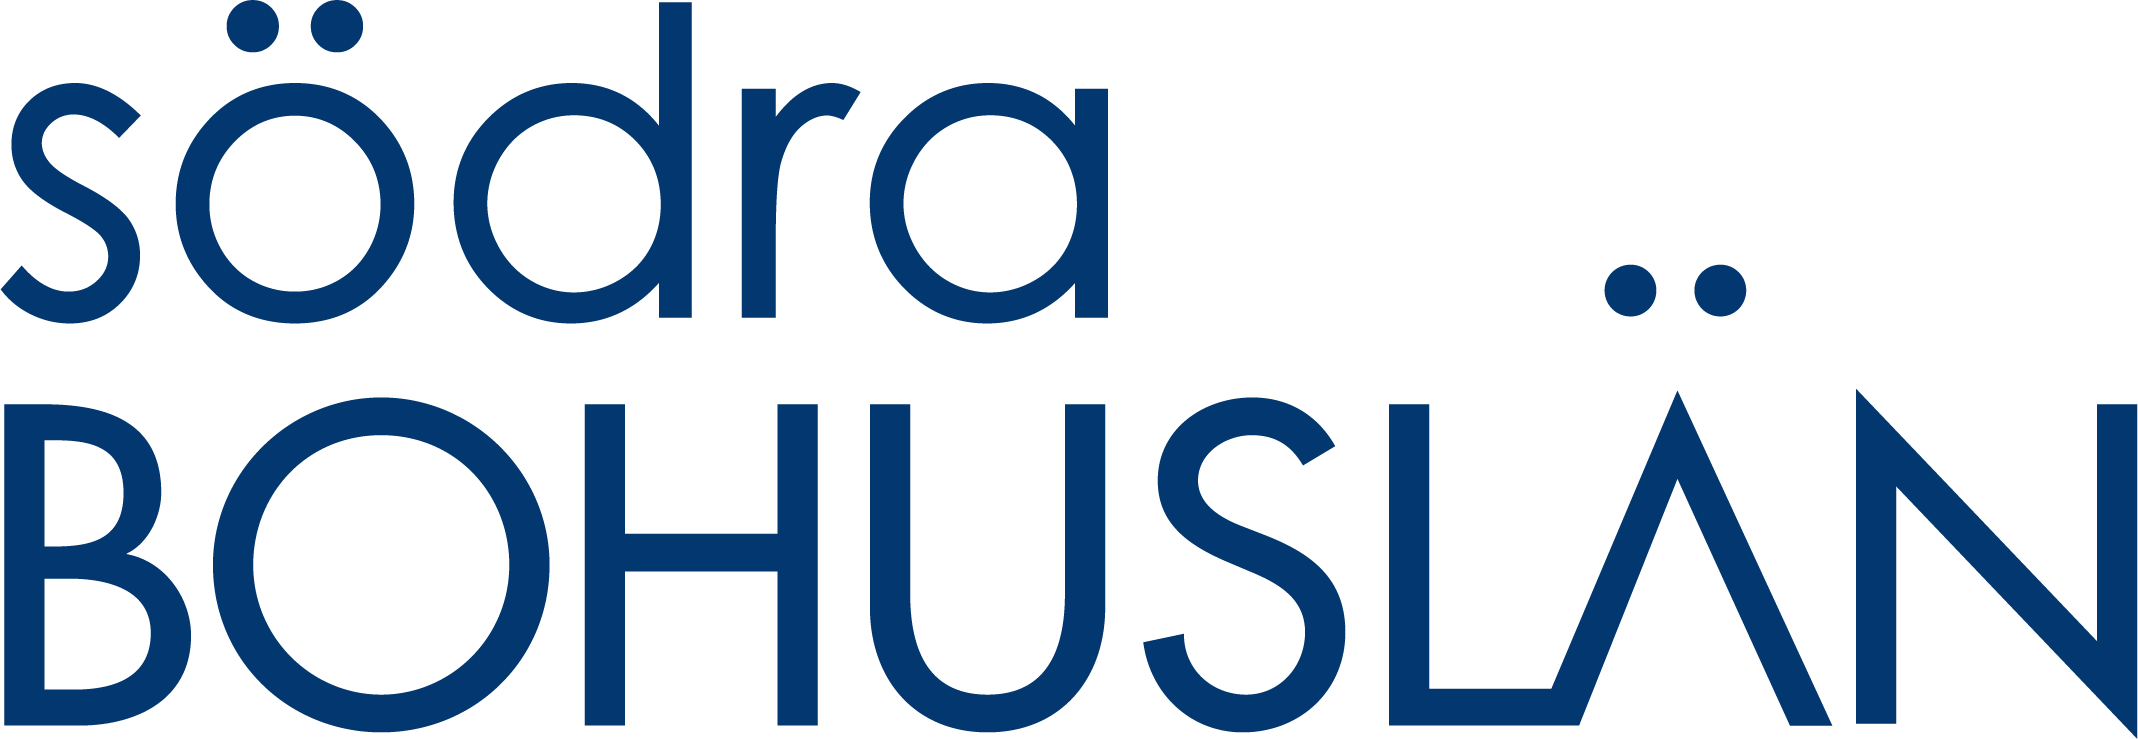 Södra Bohuslän header logo